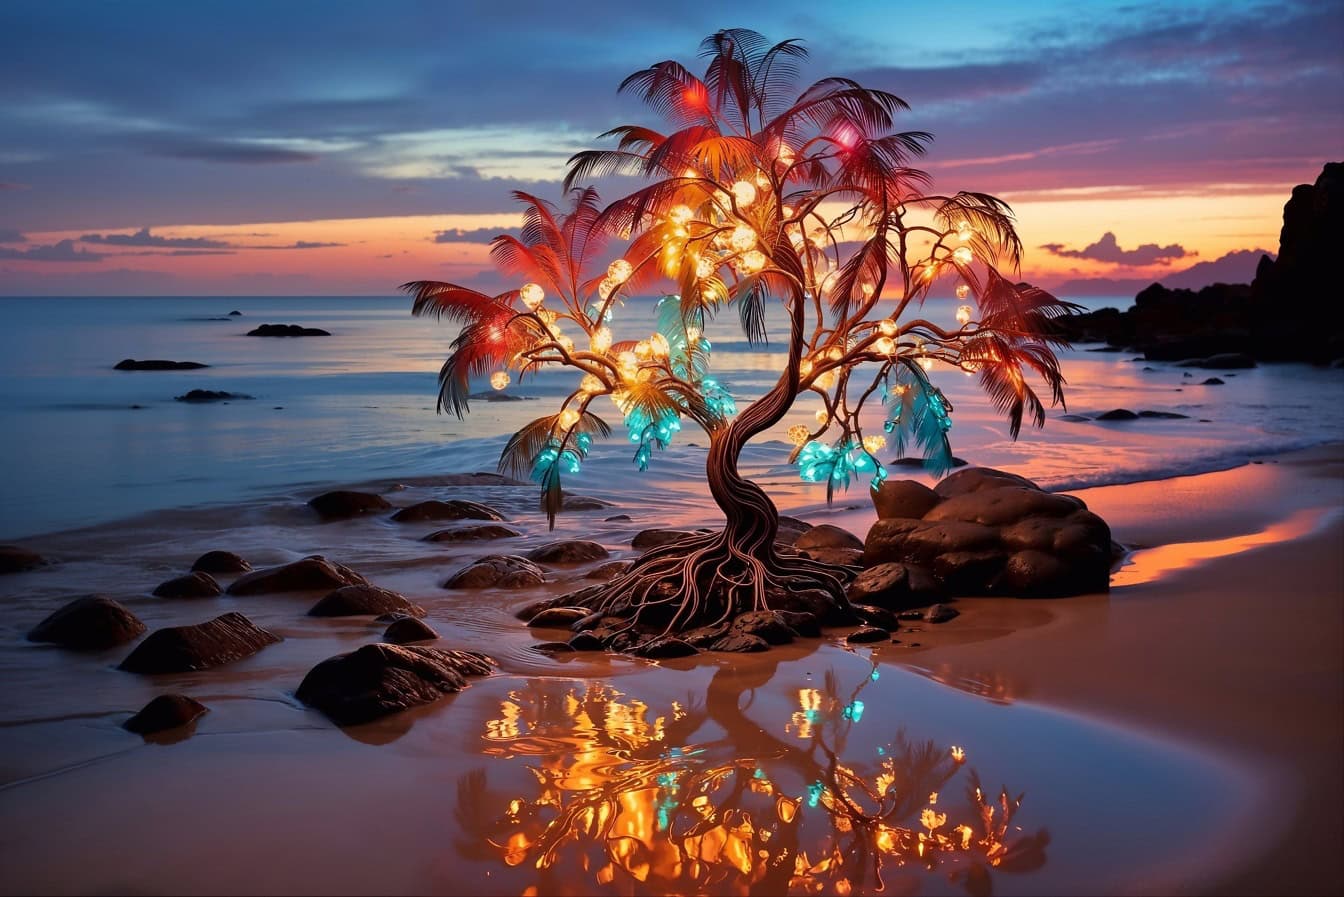 Matahari terbenam tepi pantai yang ajaib dengan pohon dengan lampu warna-warni di atasnya